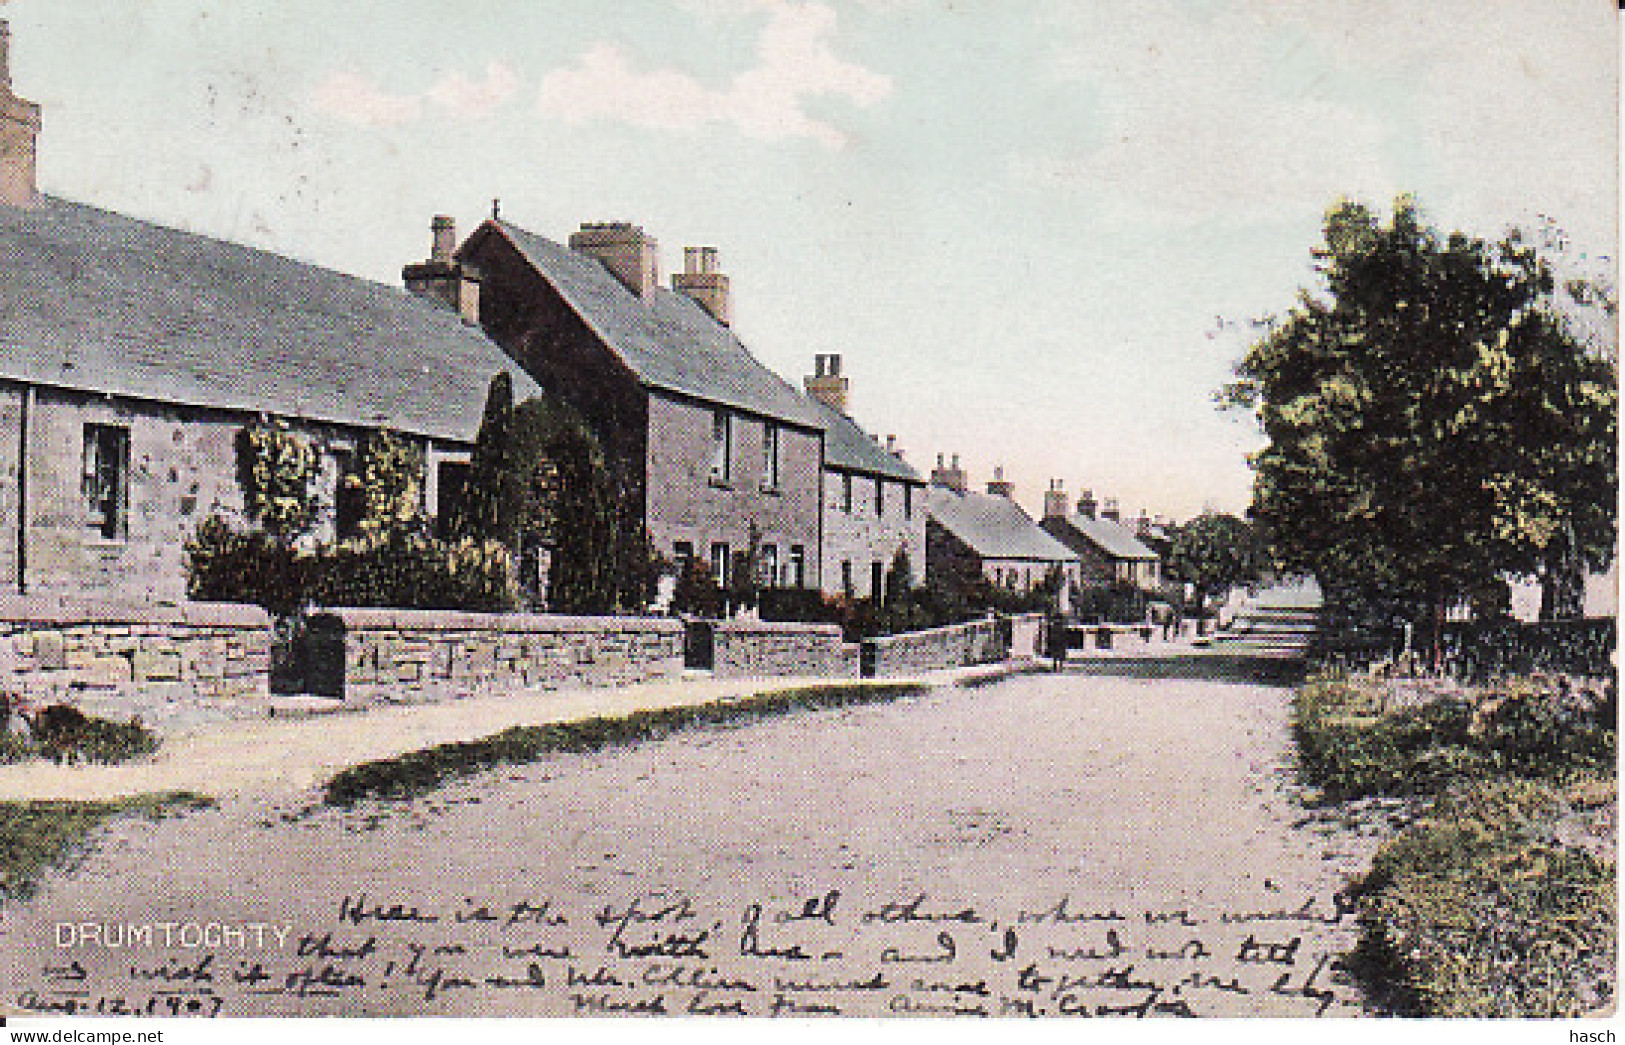 2780	27	Drumtochty, 1907  - Aberdeenshire